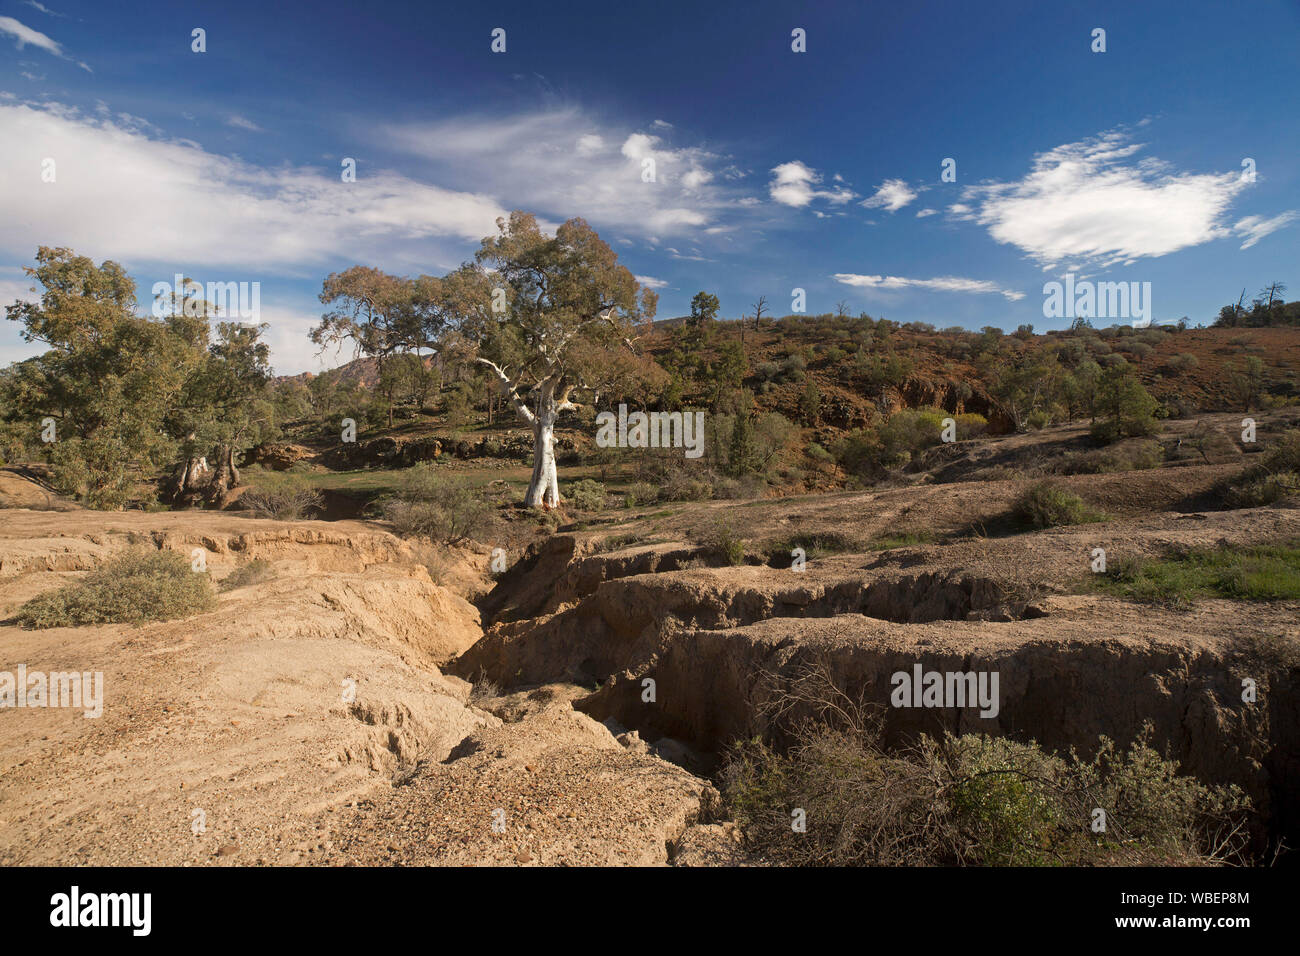 Landschaft mit tiefen und klaffende Risse über den Boden am Fuße der Hügel durch die Erosion durch Wasser, Flinders Ranges National Park Australien Stockfoto